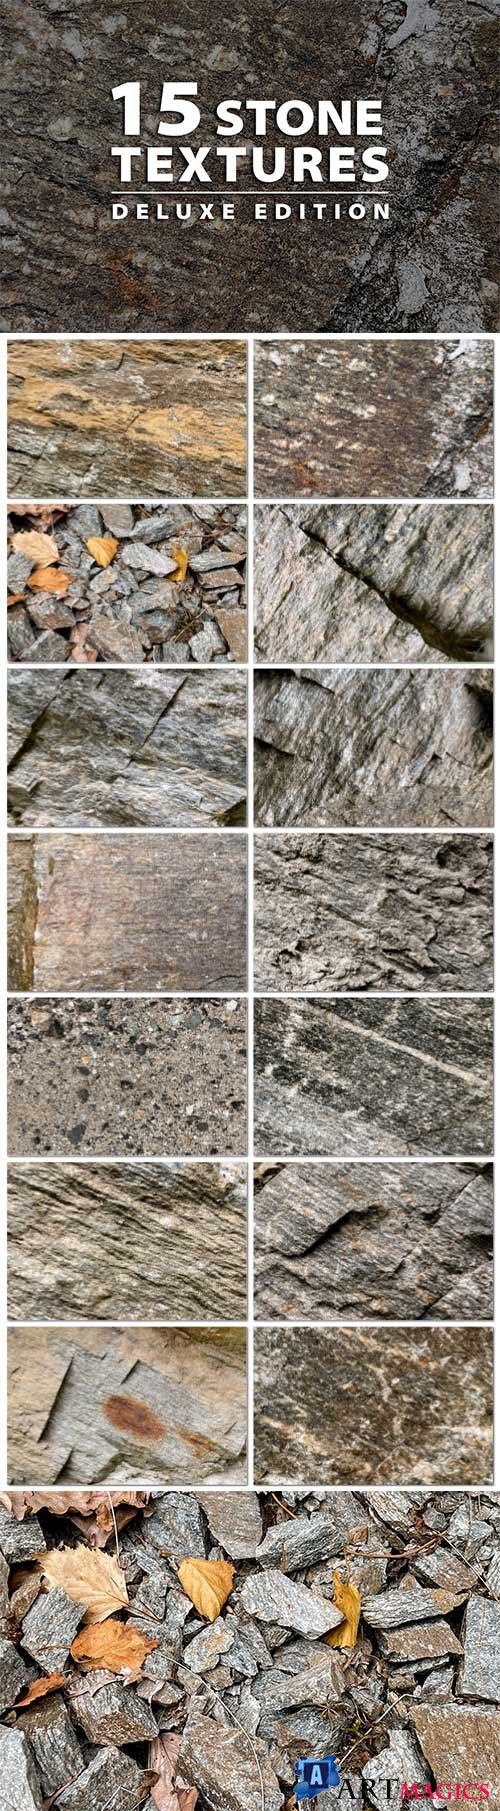 15 Stone Textures